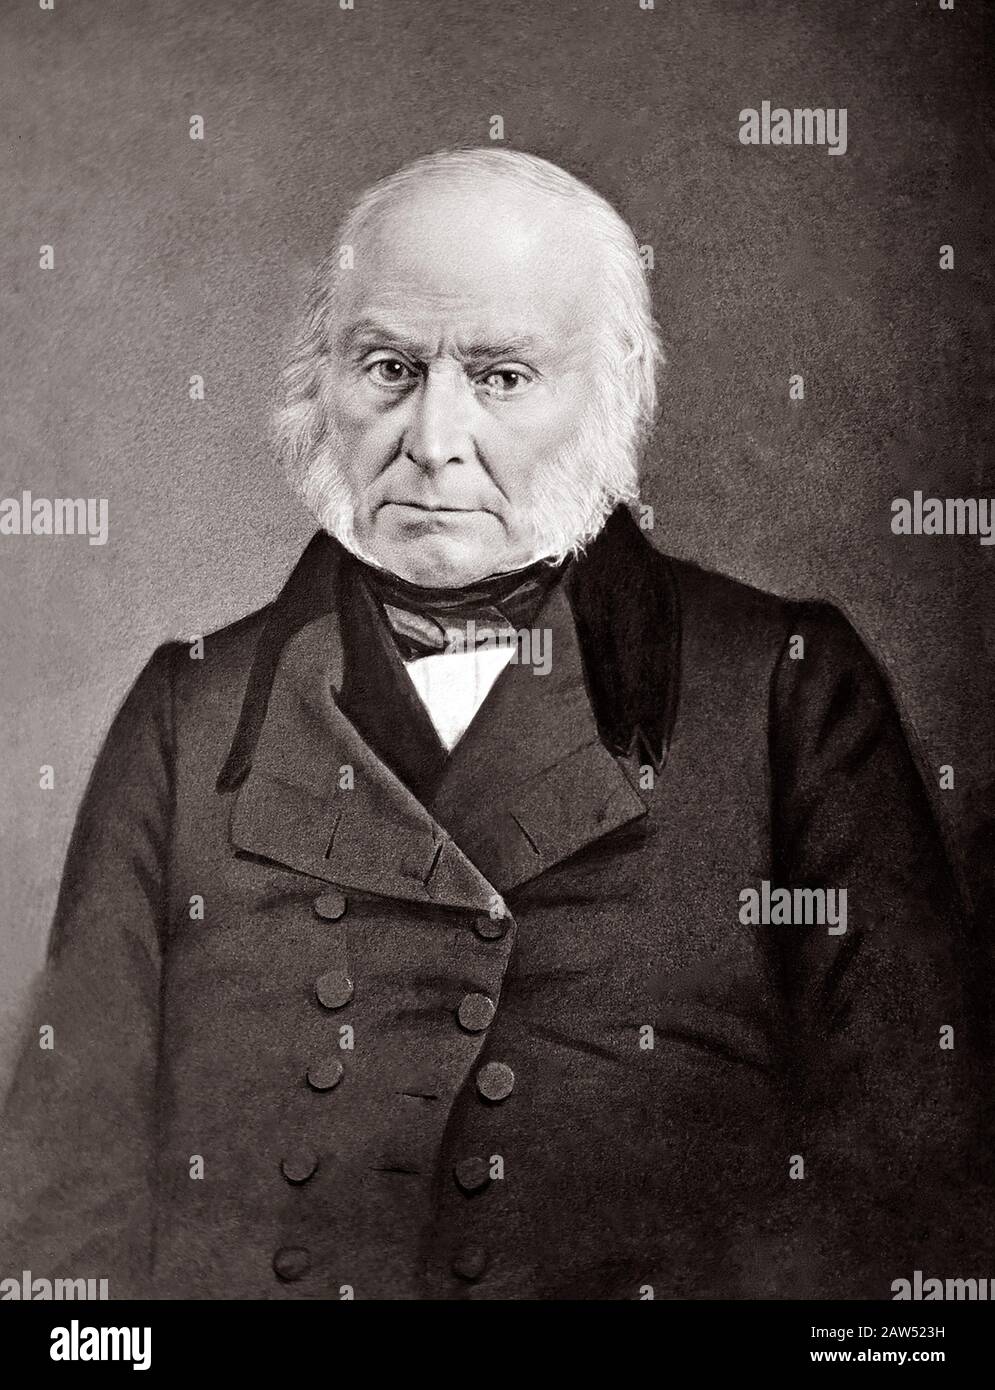 1847 ca , USA : IL Presidente degli Stati Uniti JOHN QUINCY ADAMS ( 1767 - 1848 ). Fotografia originale ( daguerreotype ) di Mathew Brady . Adams era il Presidio degli Stati Uniti Foto Stock